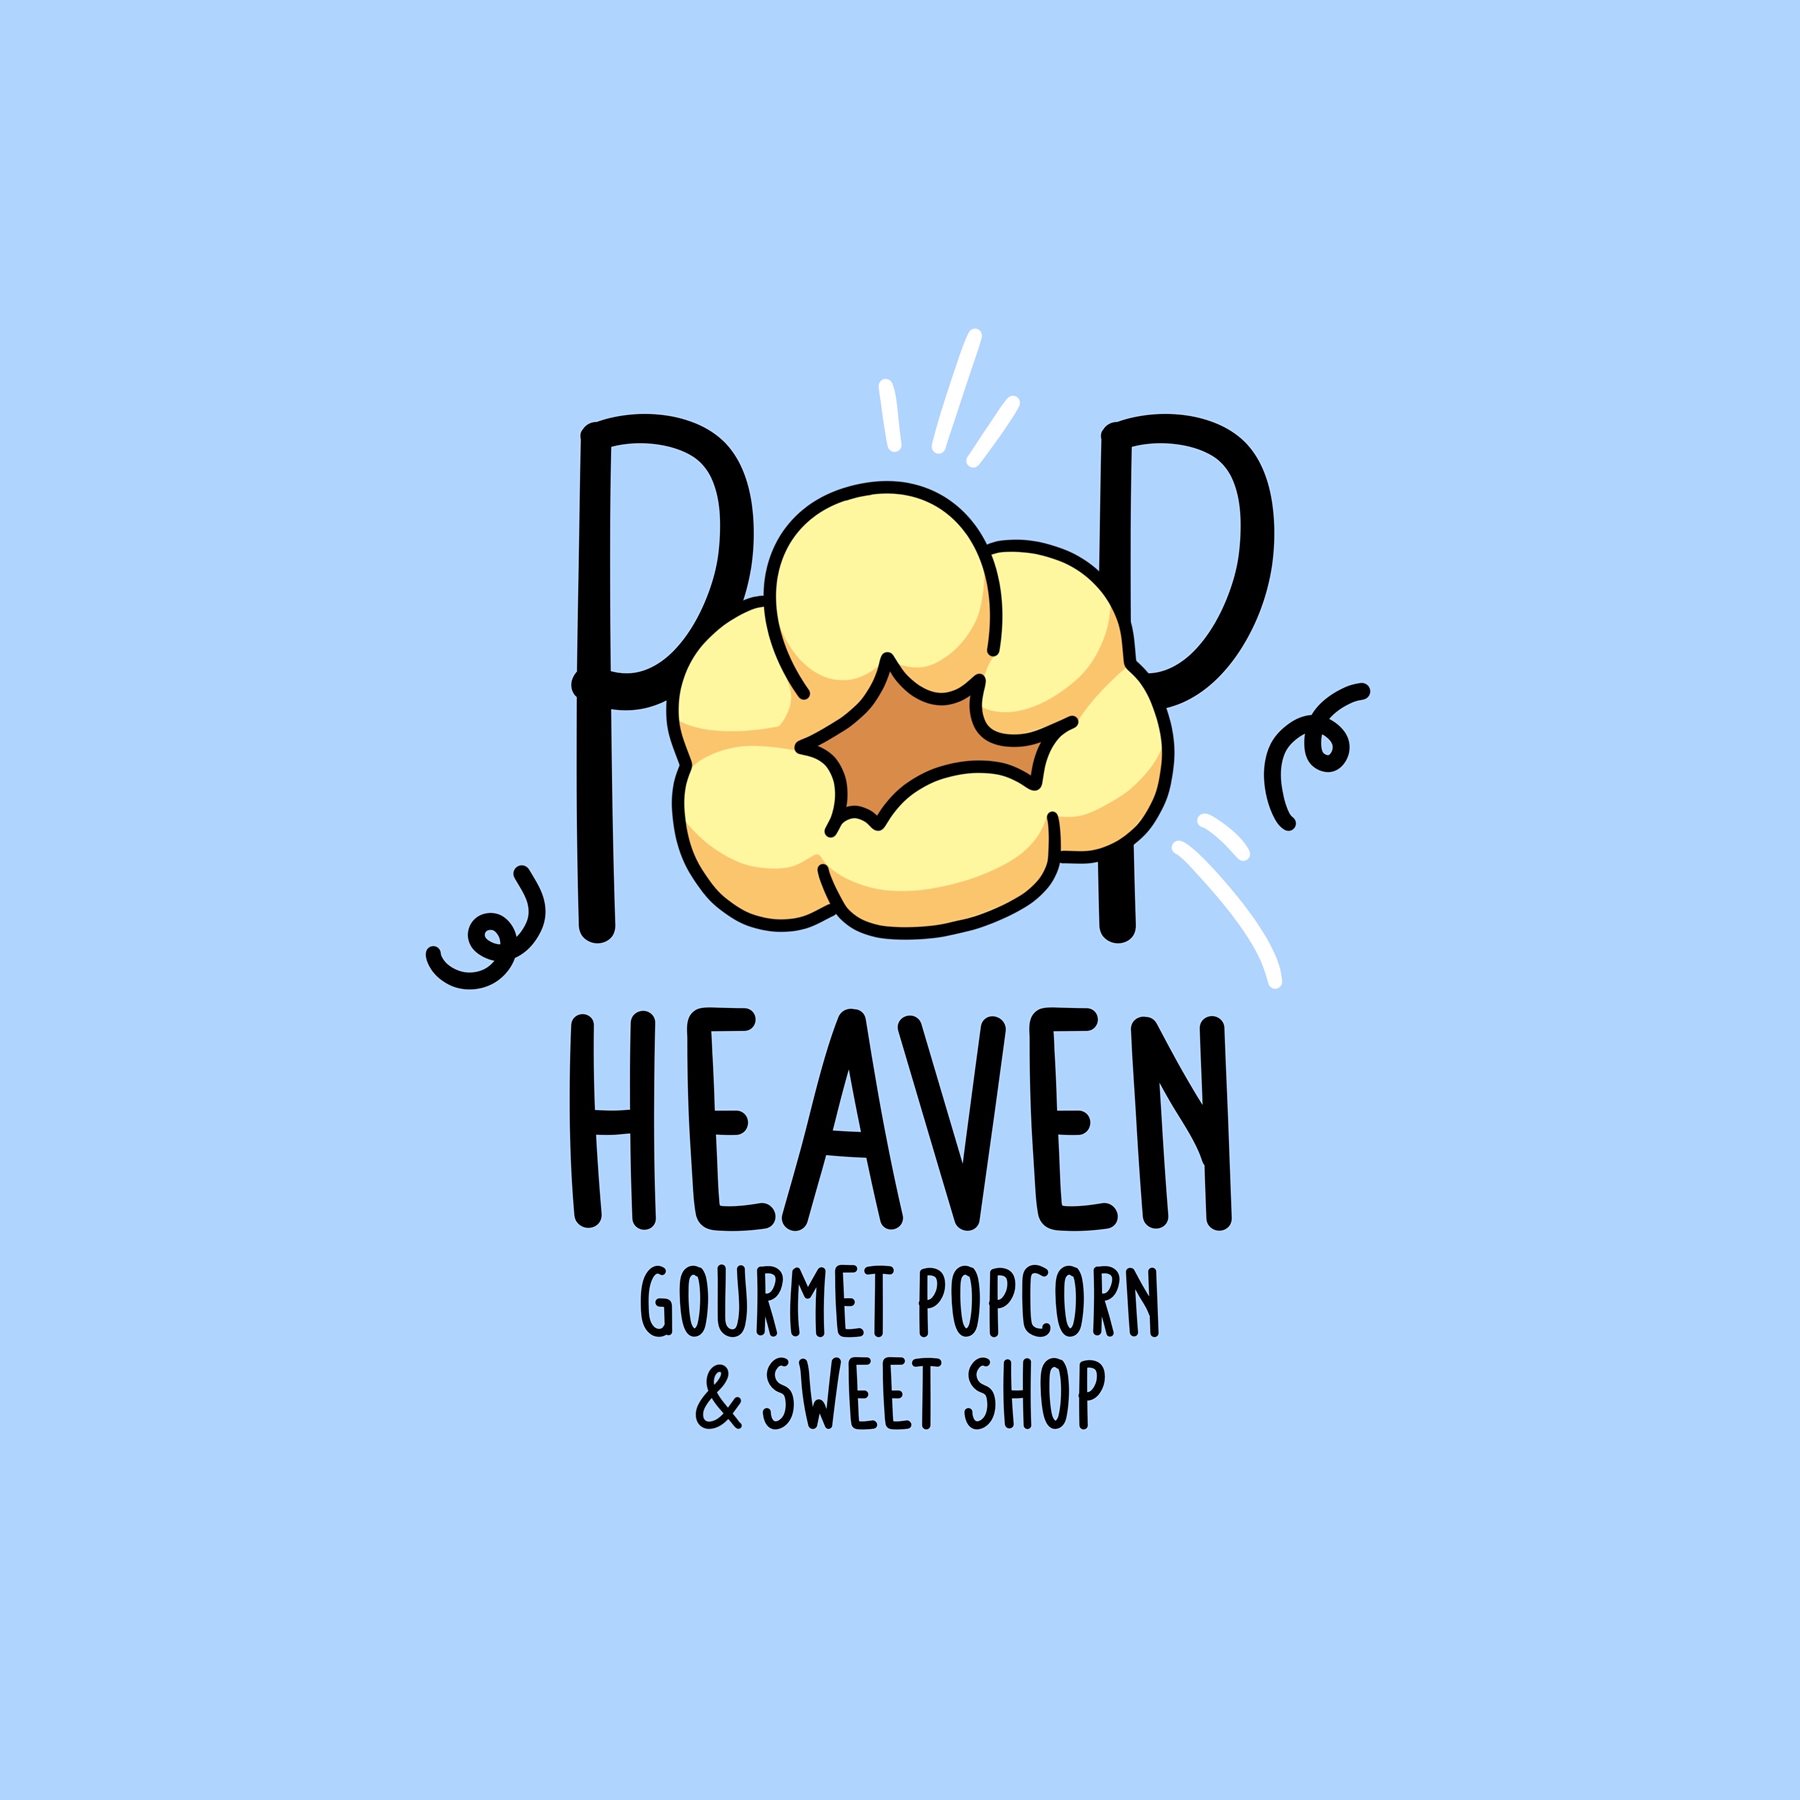 Pop Heaven Gourmet Popcorn & Sweet Shop